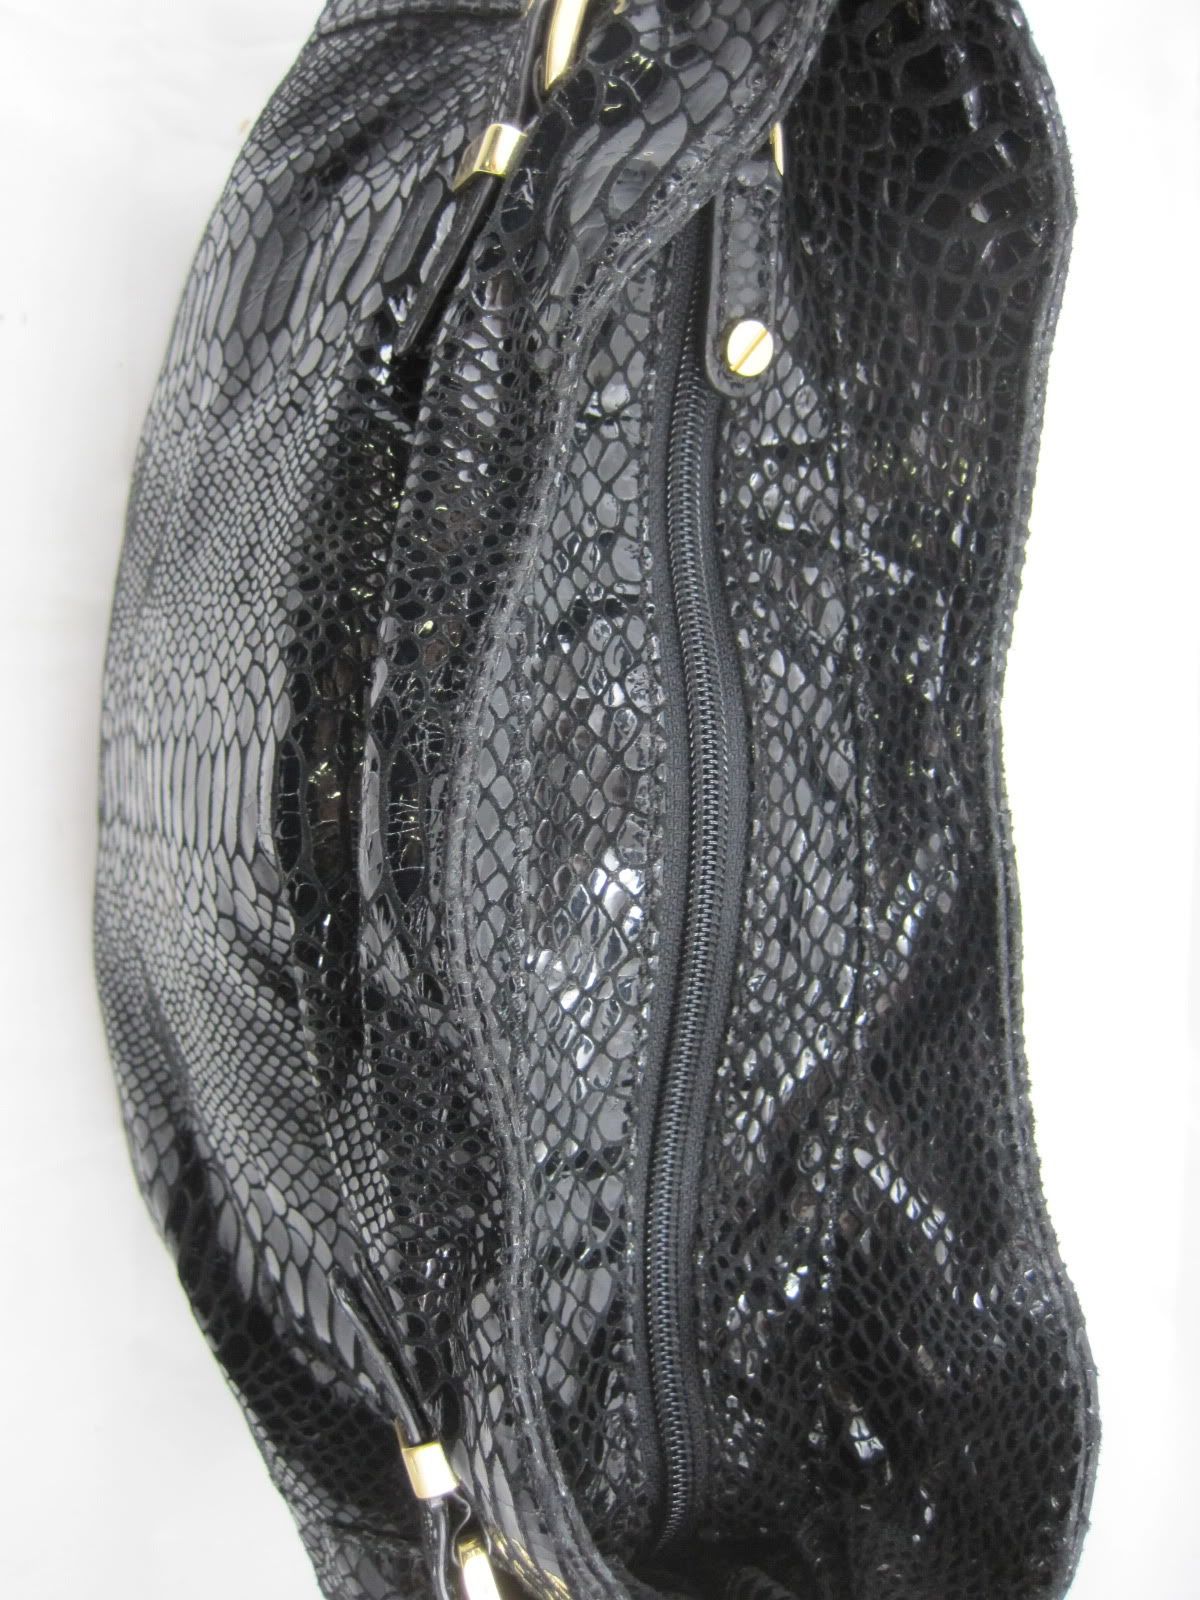 Michael Kors Kingston Patent Python Embossed Large Shoulder Bag Black